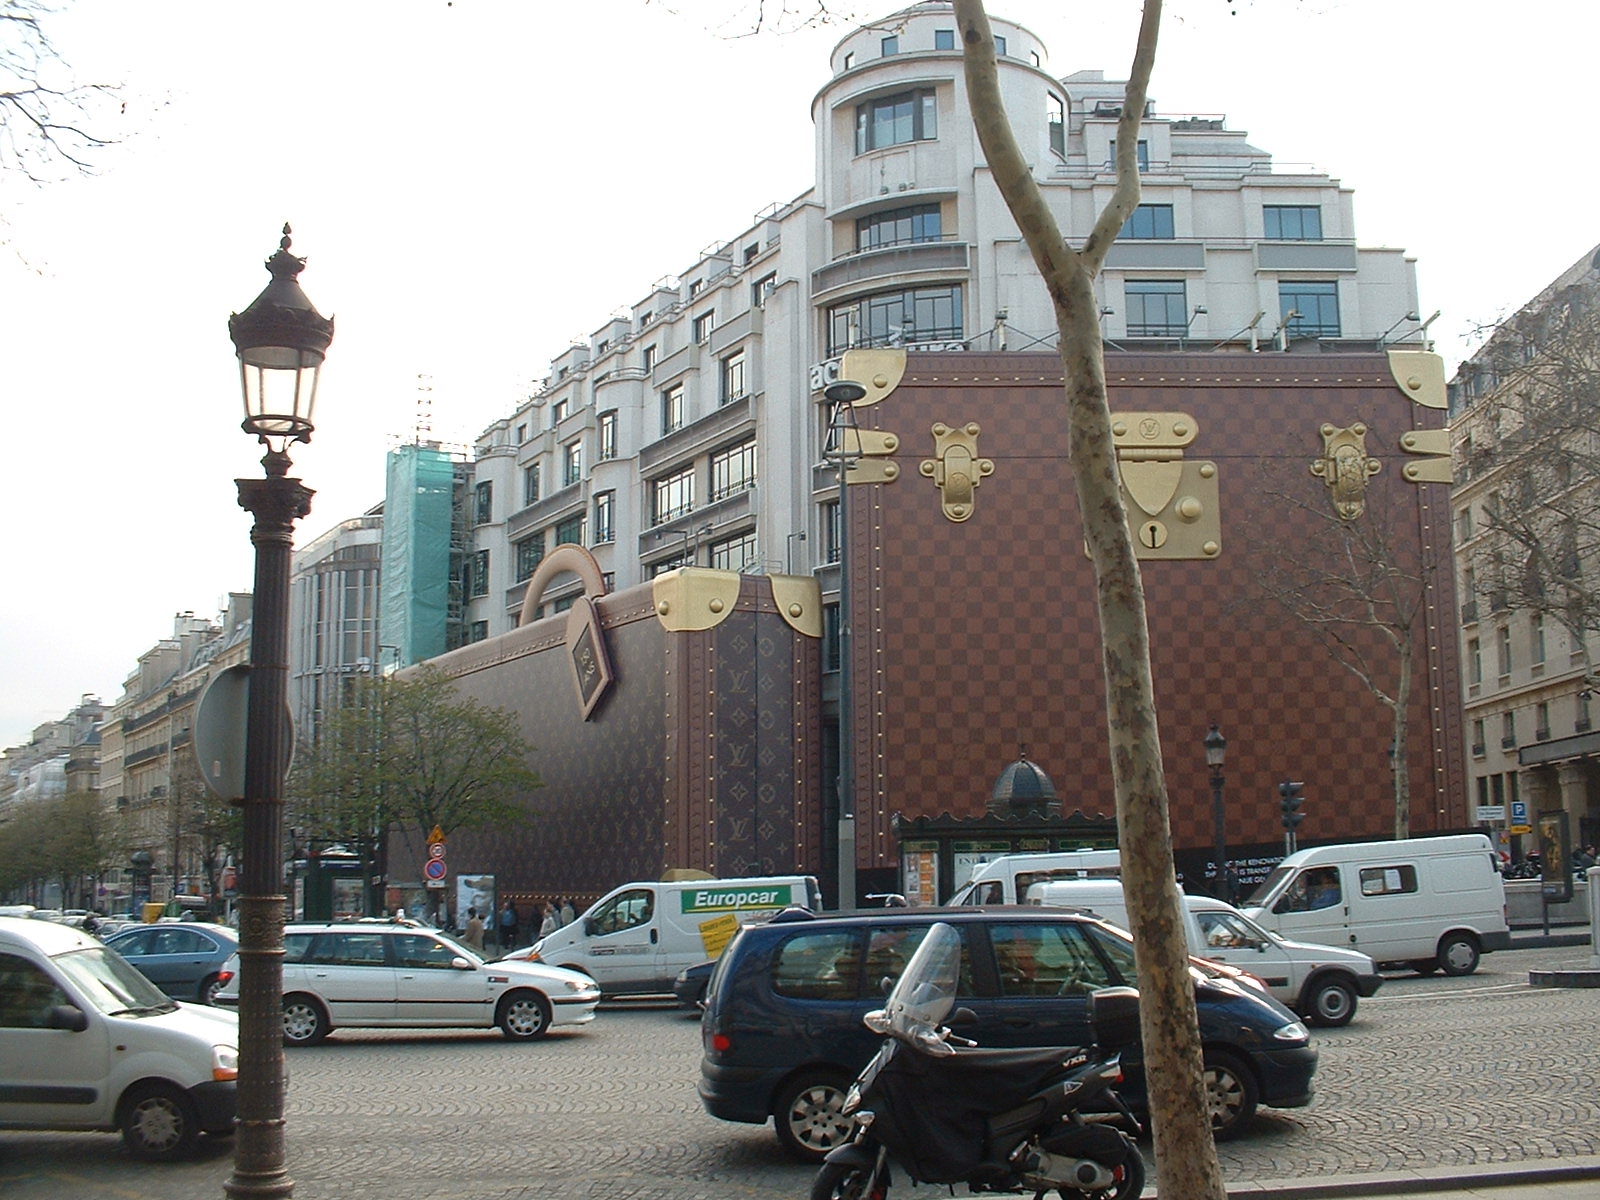 Paris day 2 - Louis Vuitton store